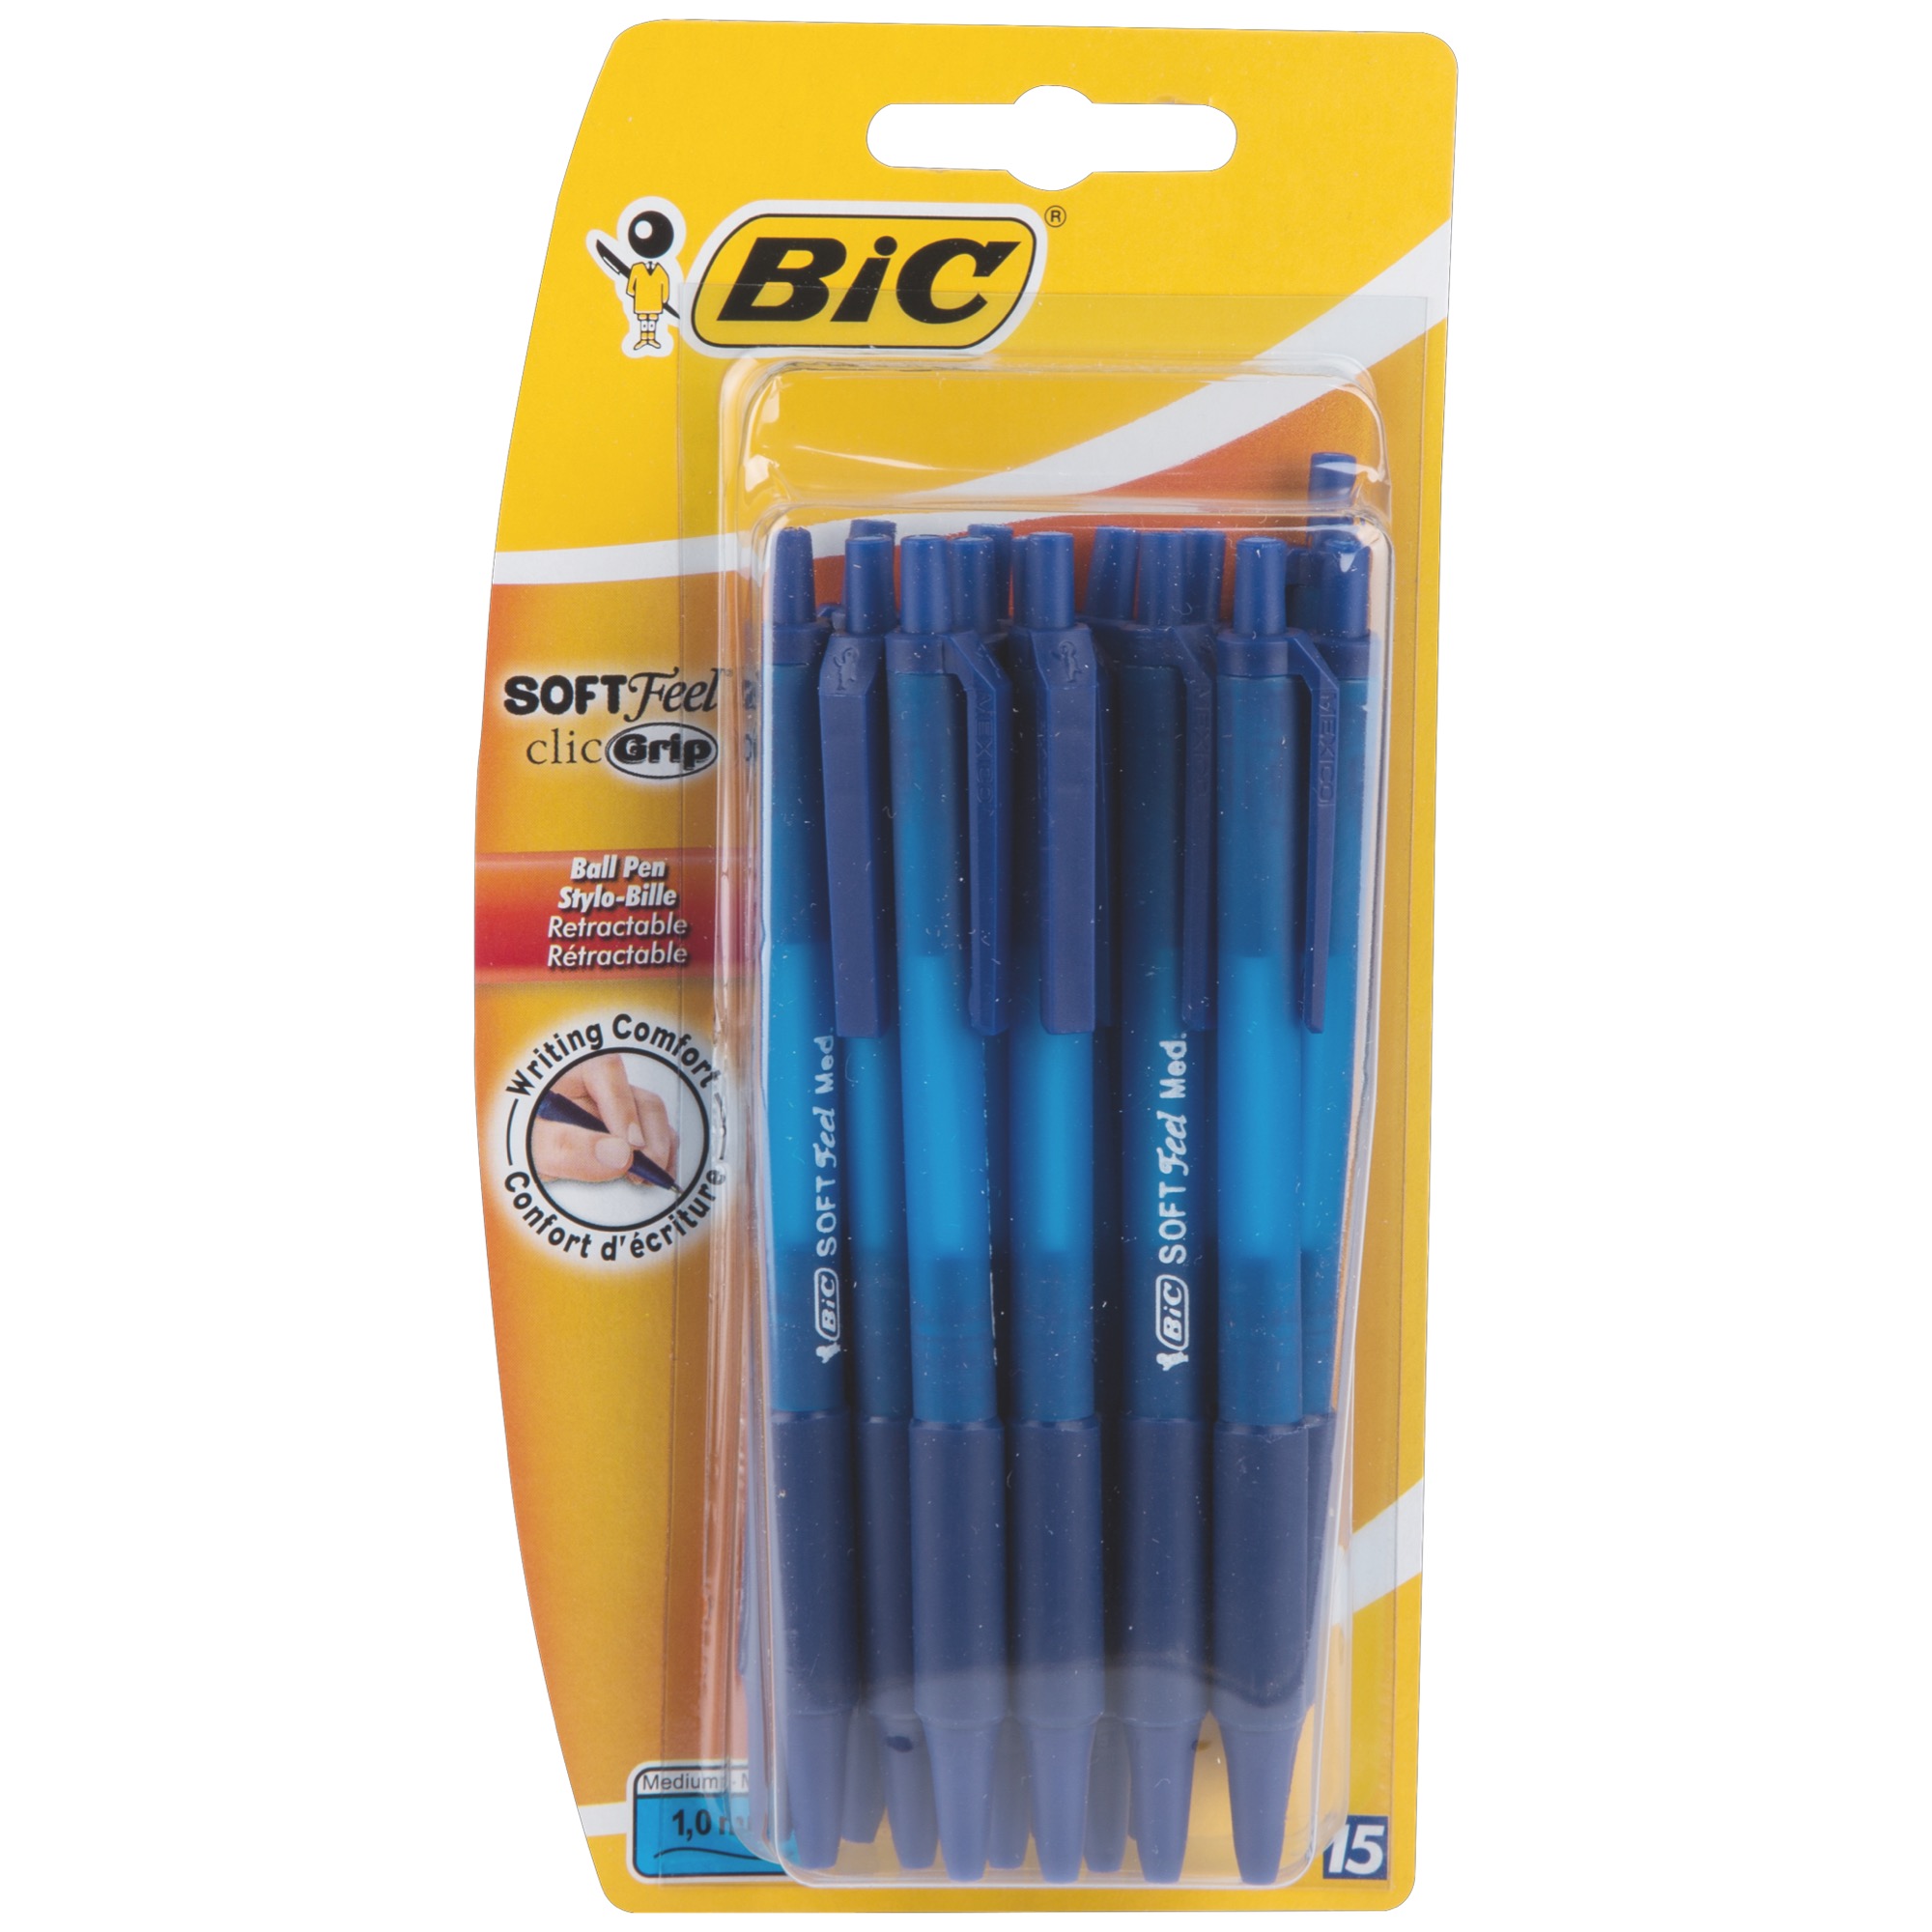 Bic Soft ClicGrip guľ.pero modré 15ks